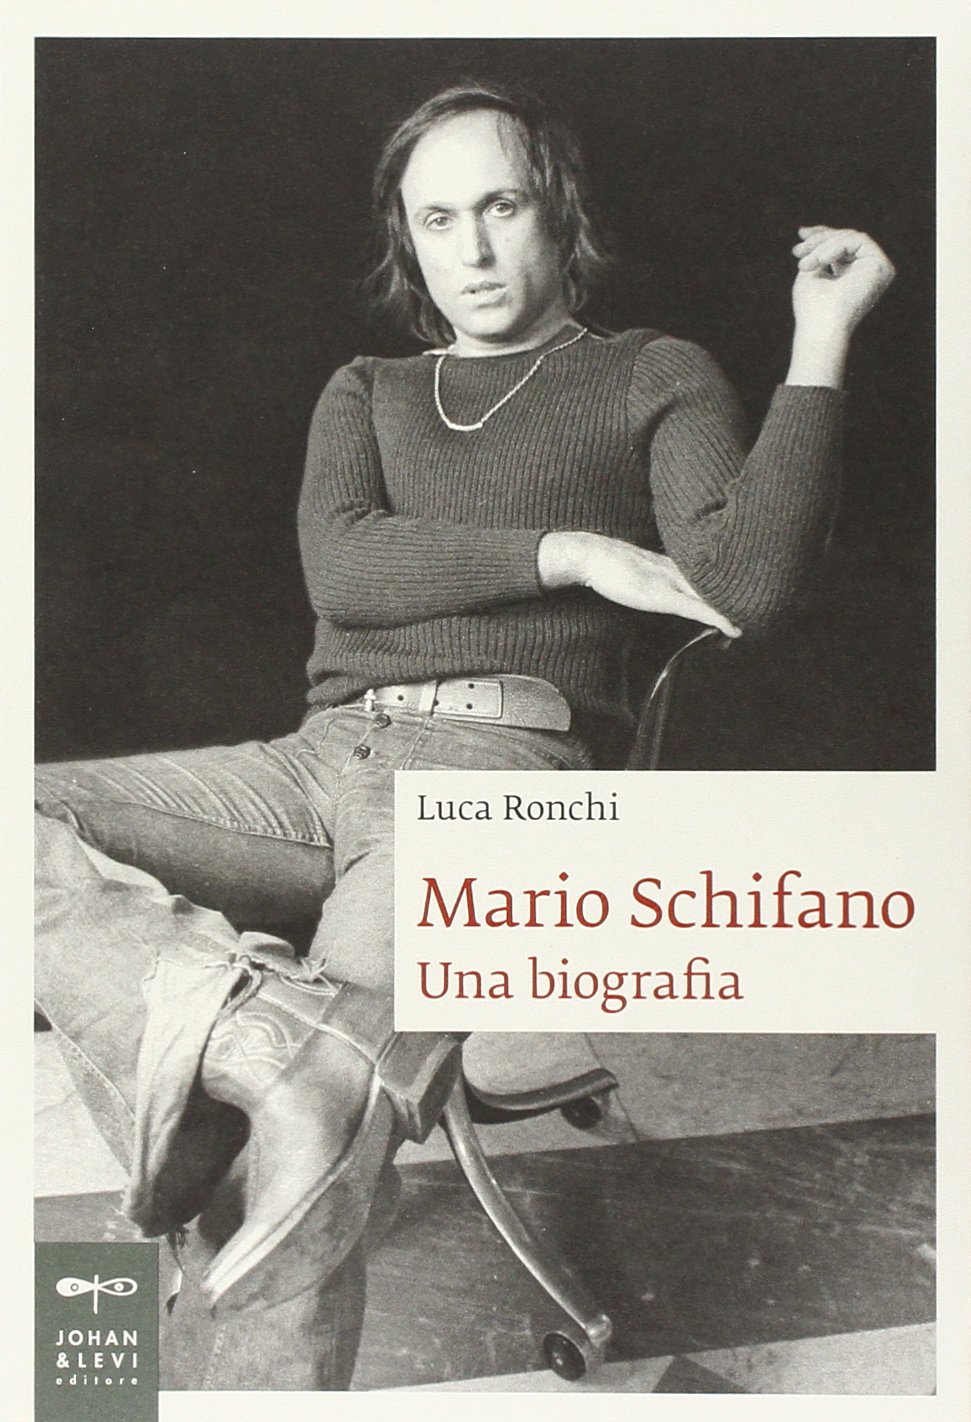 Libri Luca Ronchi - Mario Schifano. Una Biografia NUOVO SIGILLATO, EDIZIONE DEL 17/05/2012 SUBITO DISPONIBILE